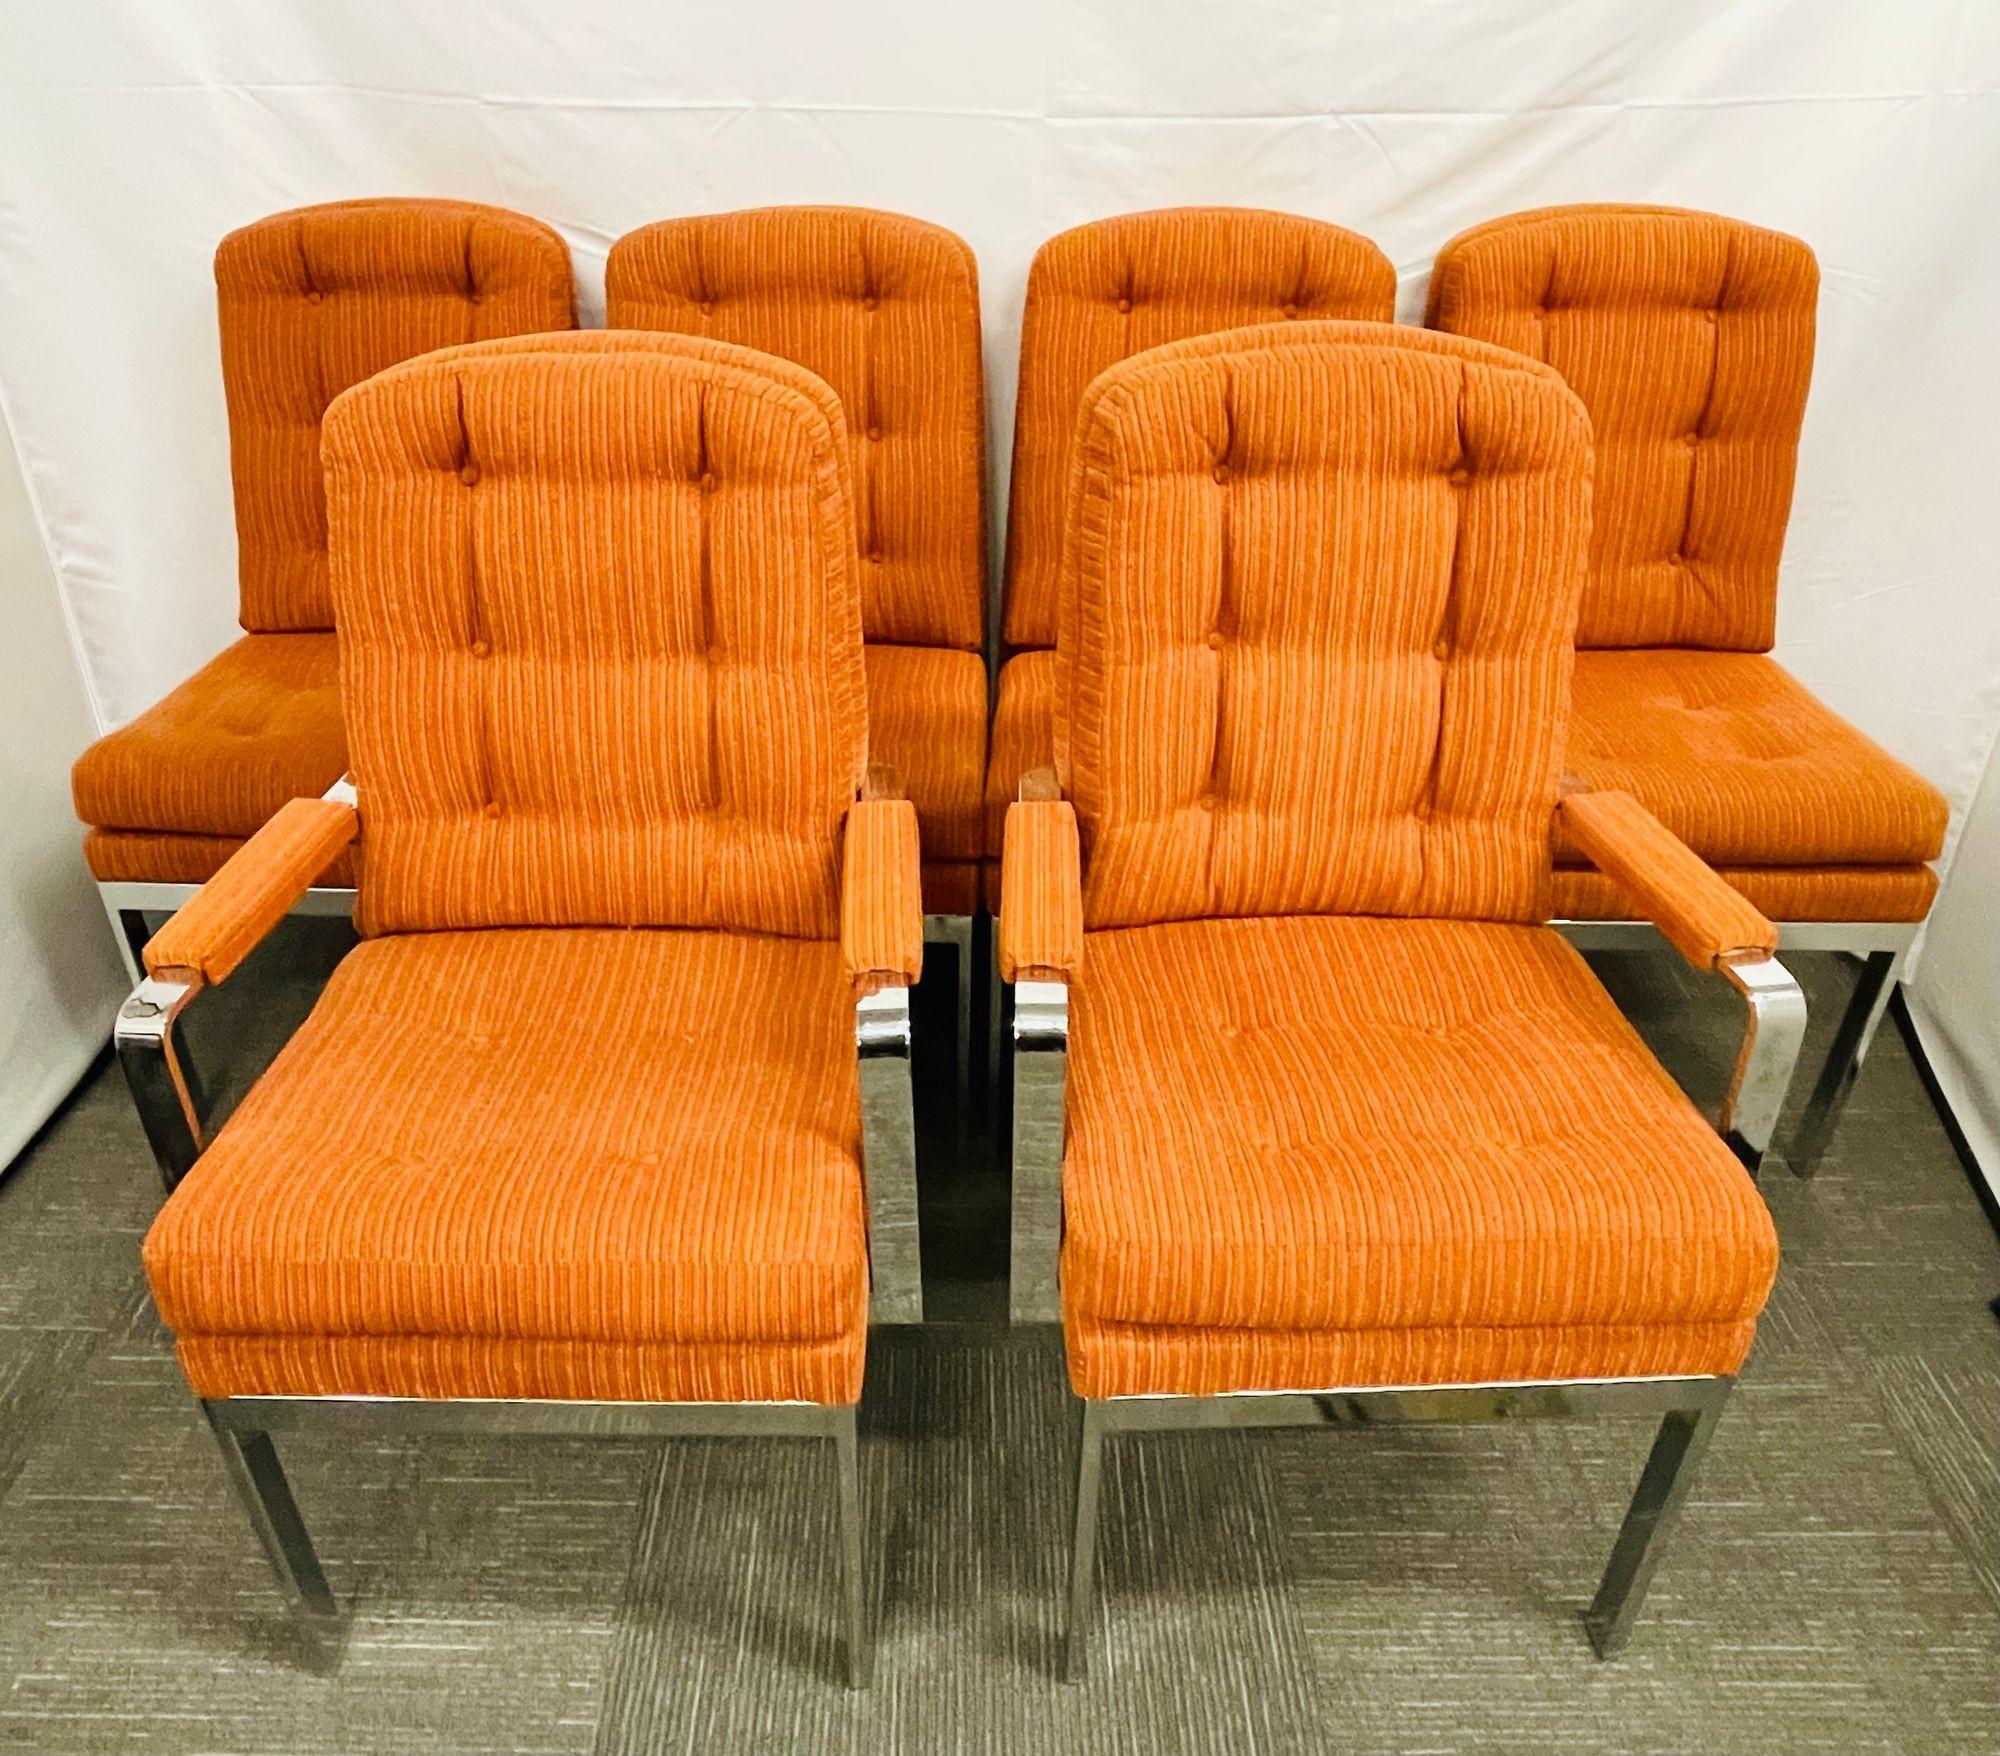 Satz von sechs Mid-Century Modern Dining Chairs, Milo Baughman Stil, Chrom, Stoff
Satz von sechs Mid-Century Modern Esszimmerstühlen, bestehend aus vier Beistellstühlen und einem Paar Armstühlen. Sie sind sowohl bequem als auch robust und